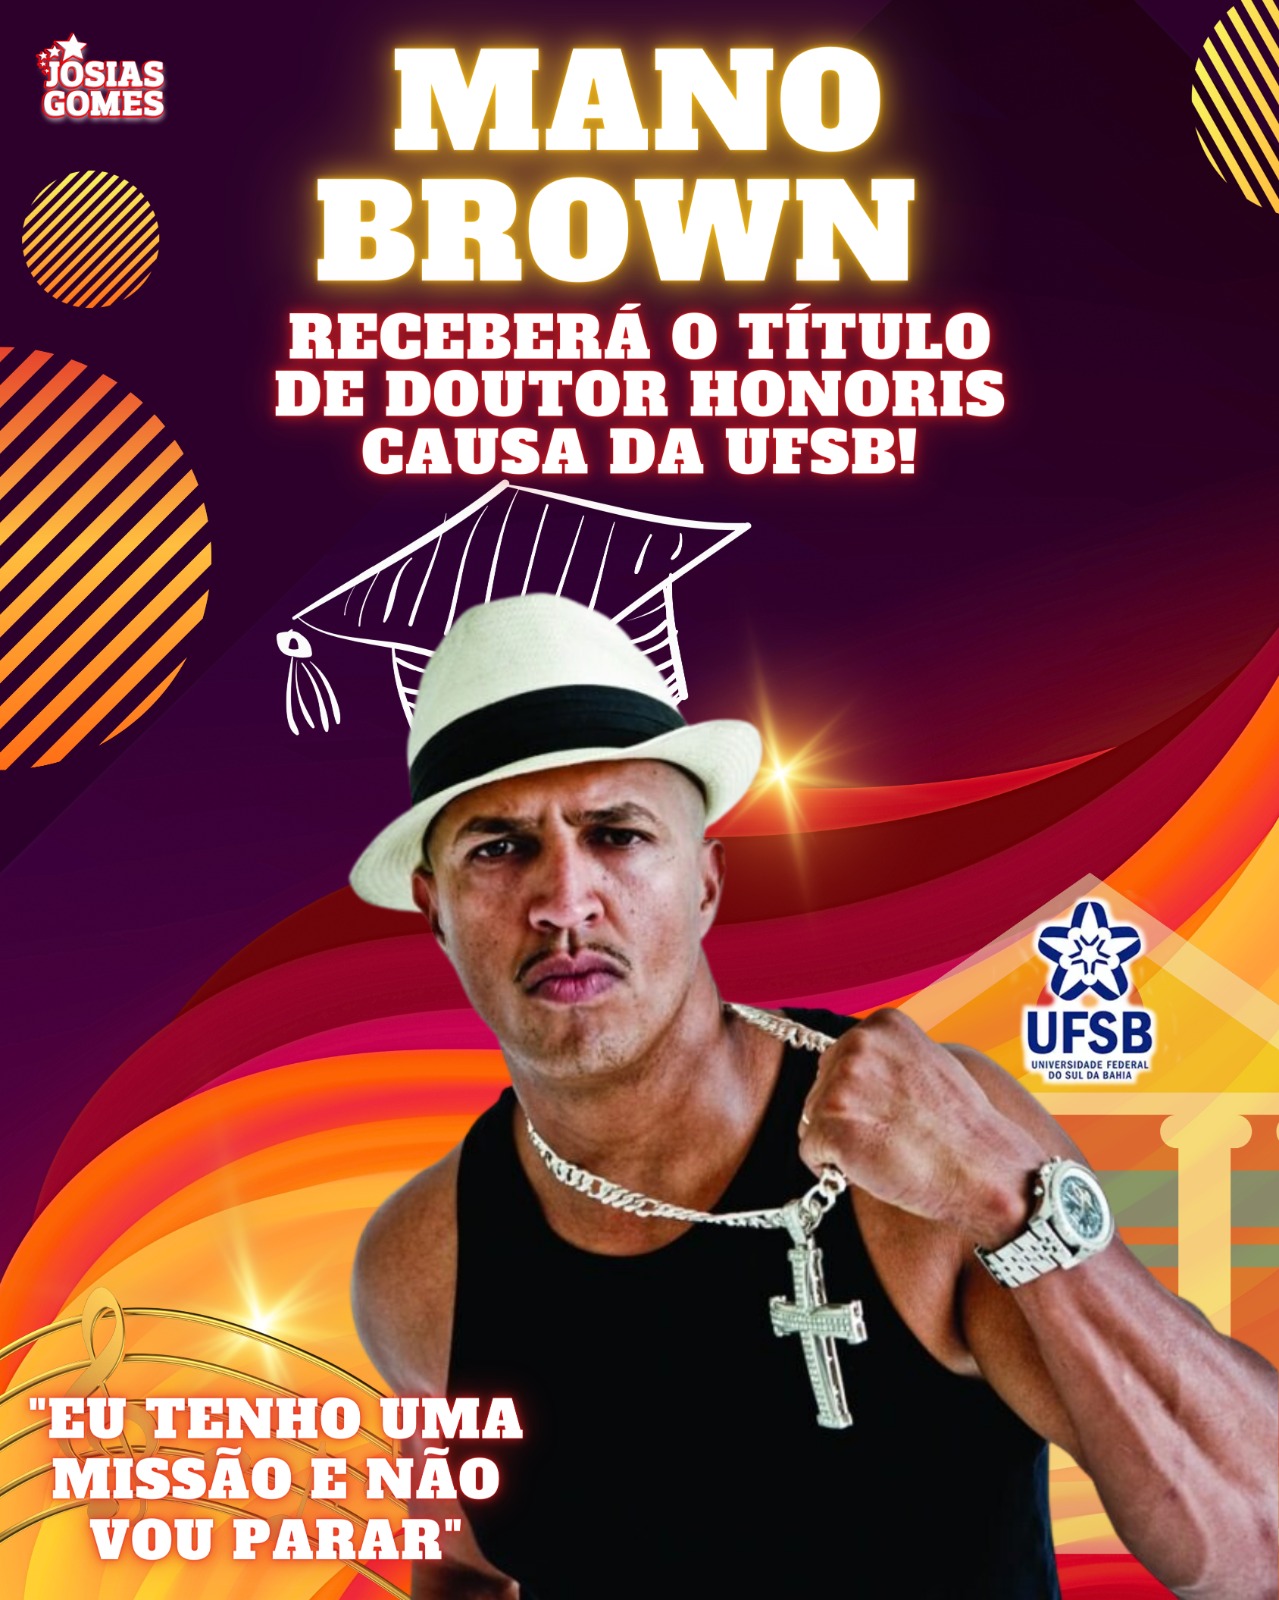 Doutor Mano Brown